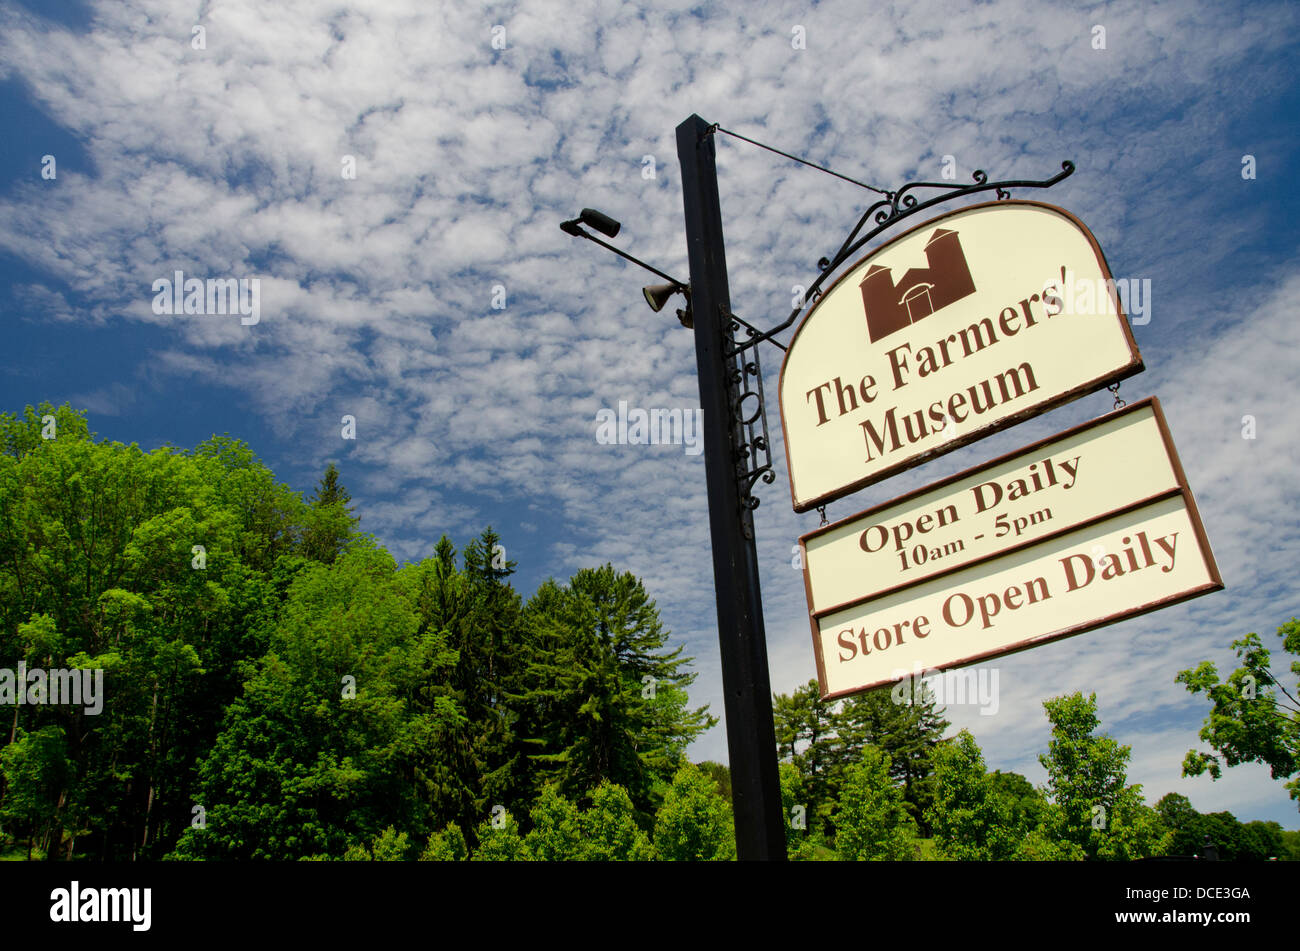 En Cooperstown, Nueva York, el Museo de los agricultores. Museo al aire libre representando la historia rural del estado de Nueva York. Signo del museo. Foto de stock